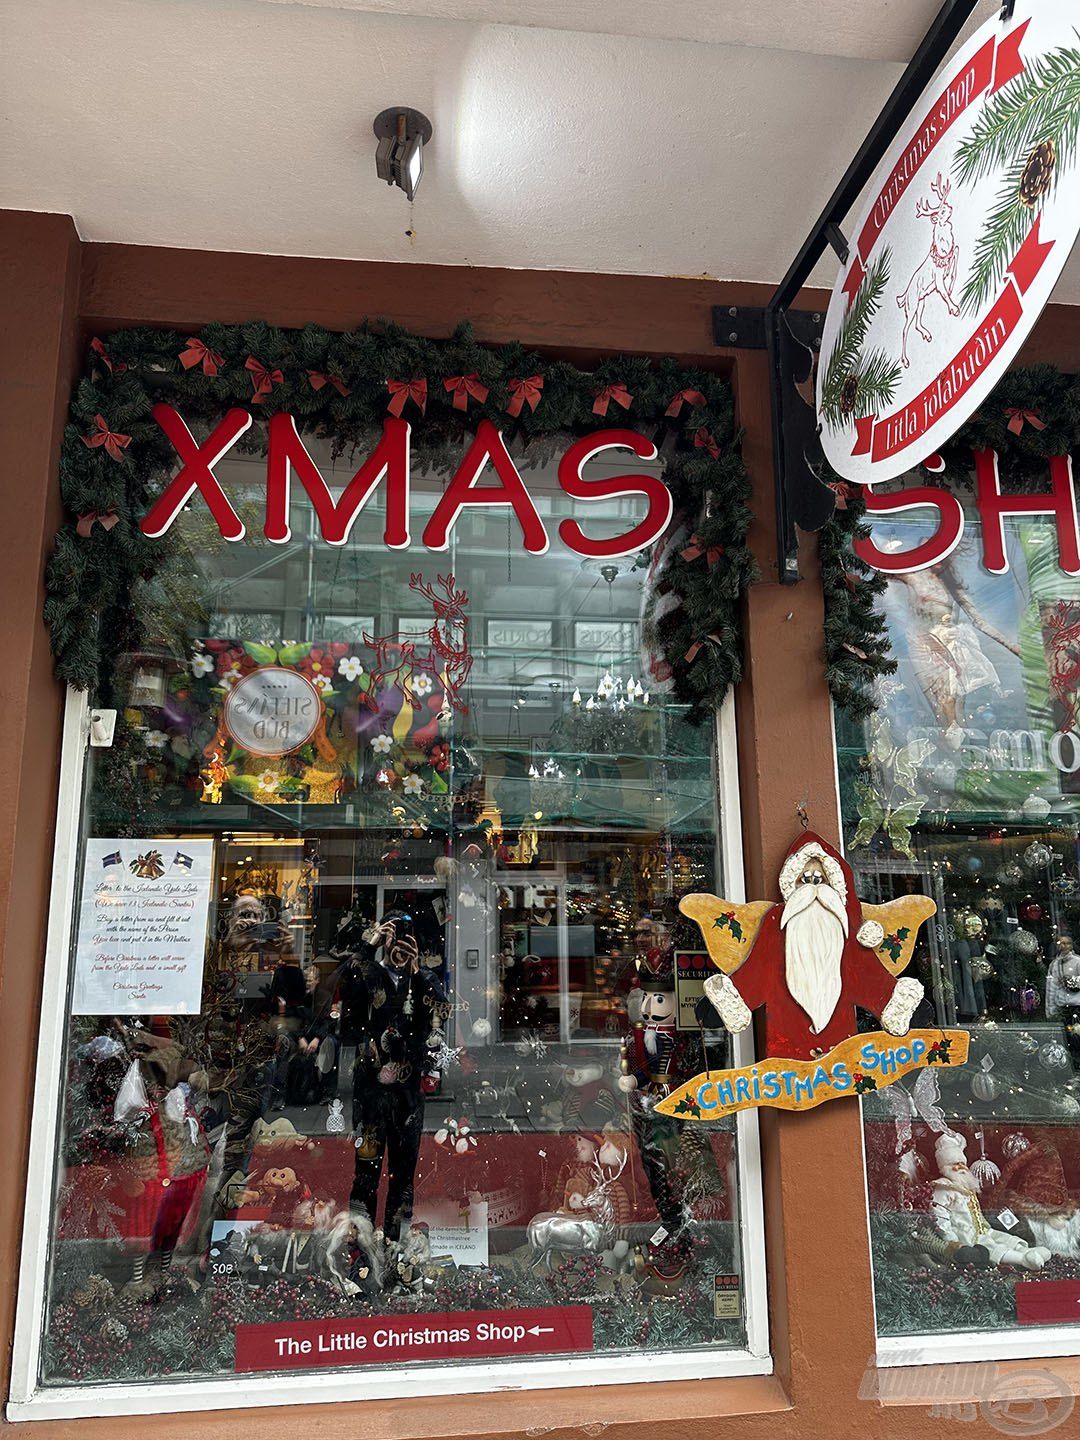 Itt az év MINDEN NAPJÁN üzemel a karácsonyi bolt